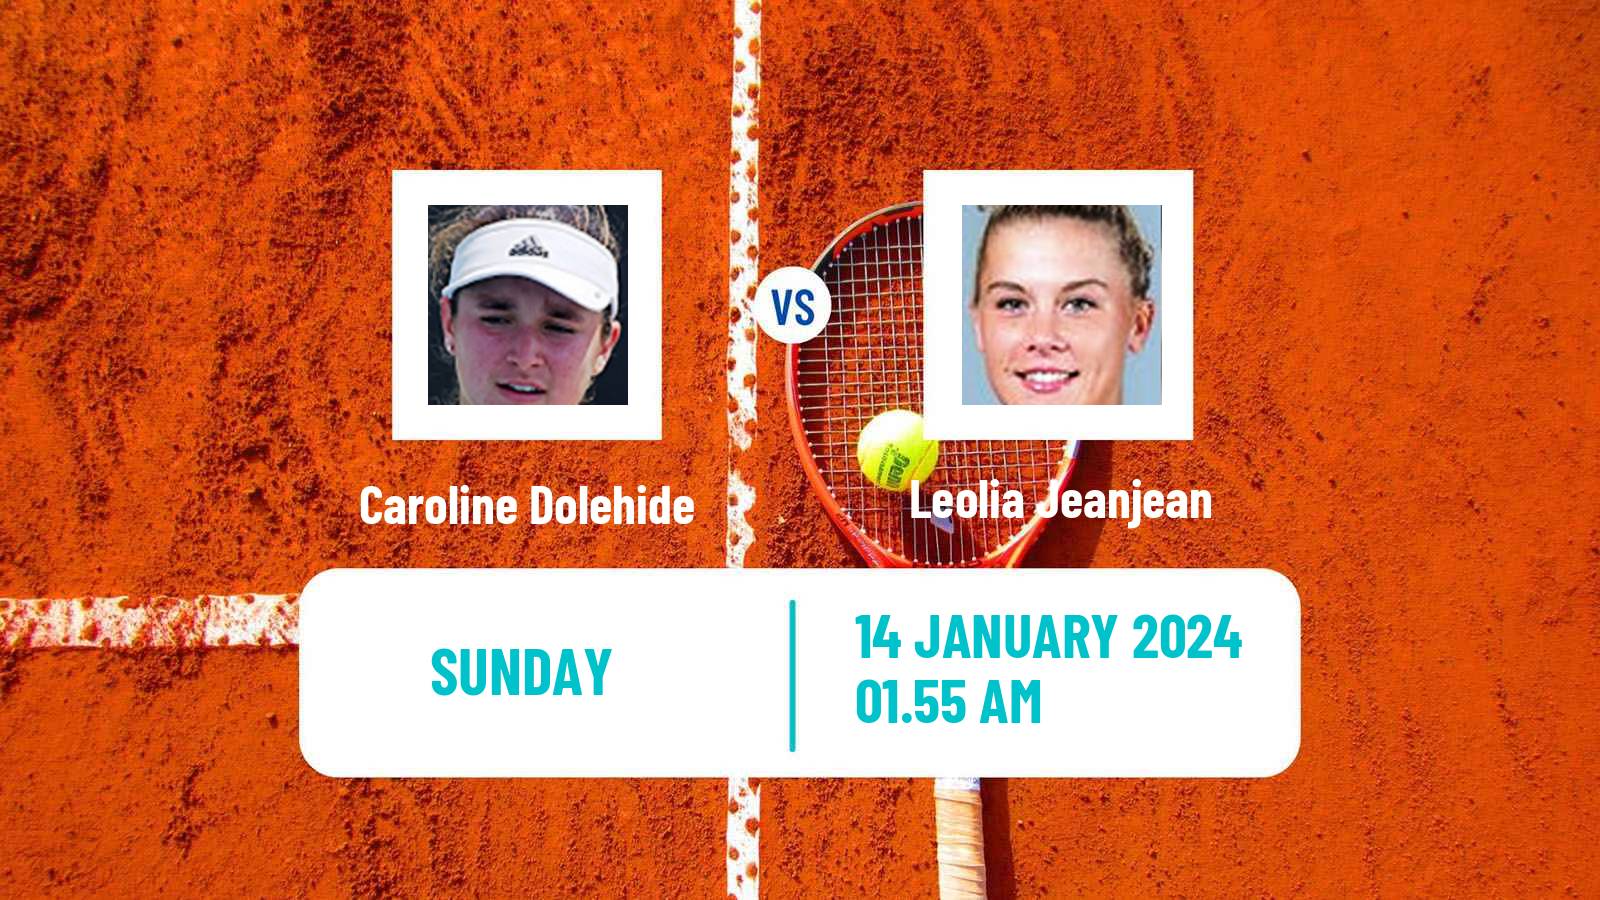 Tennis WTA Australian Open Caroline Dolehide - Leolia Jeanjean